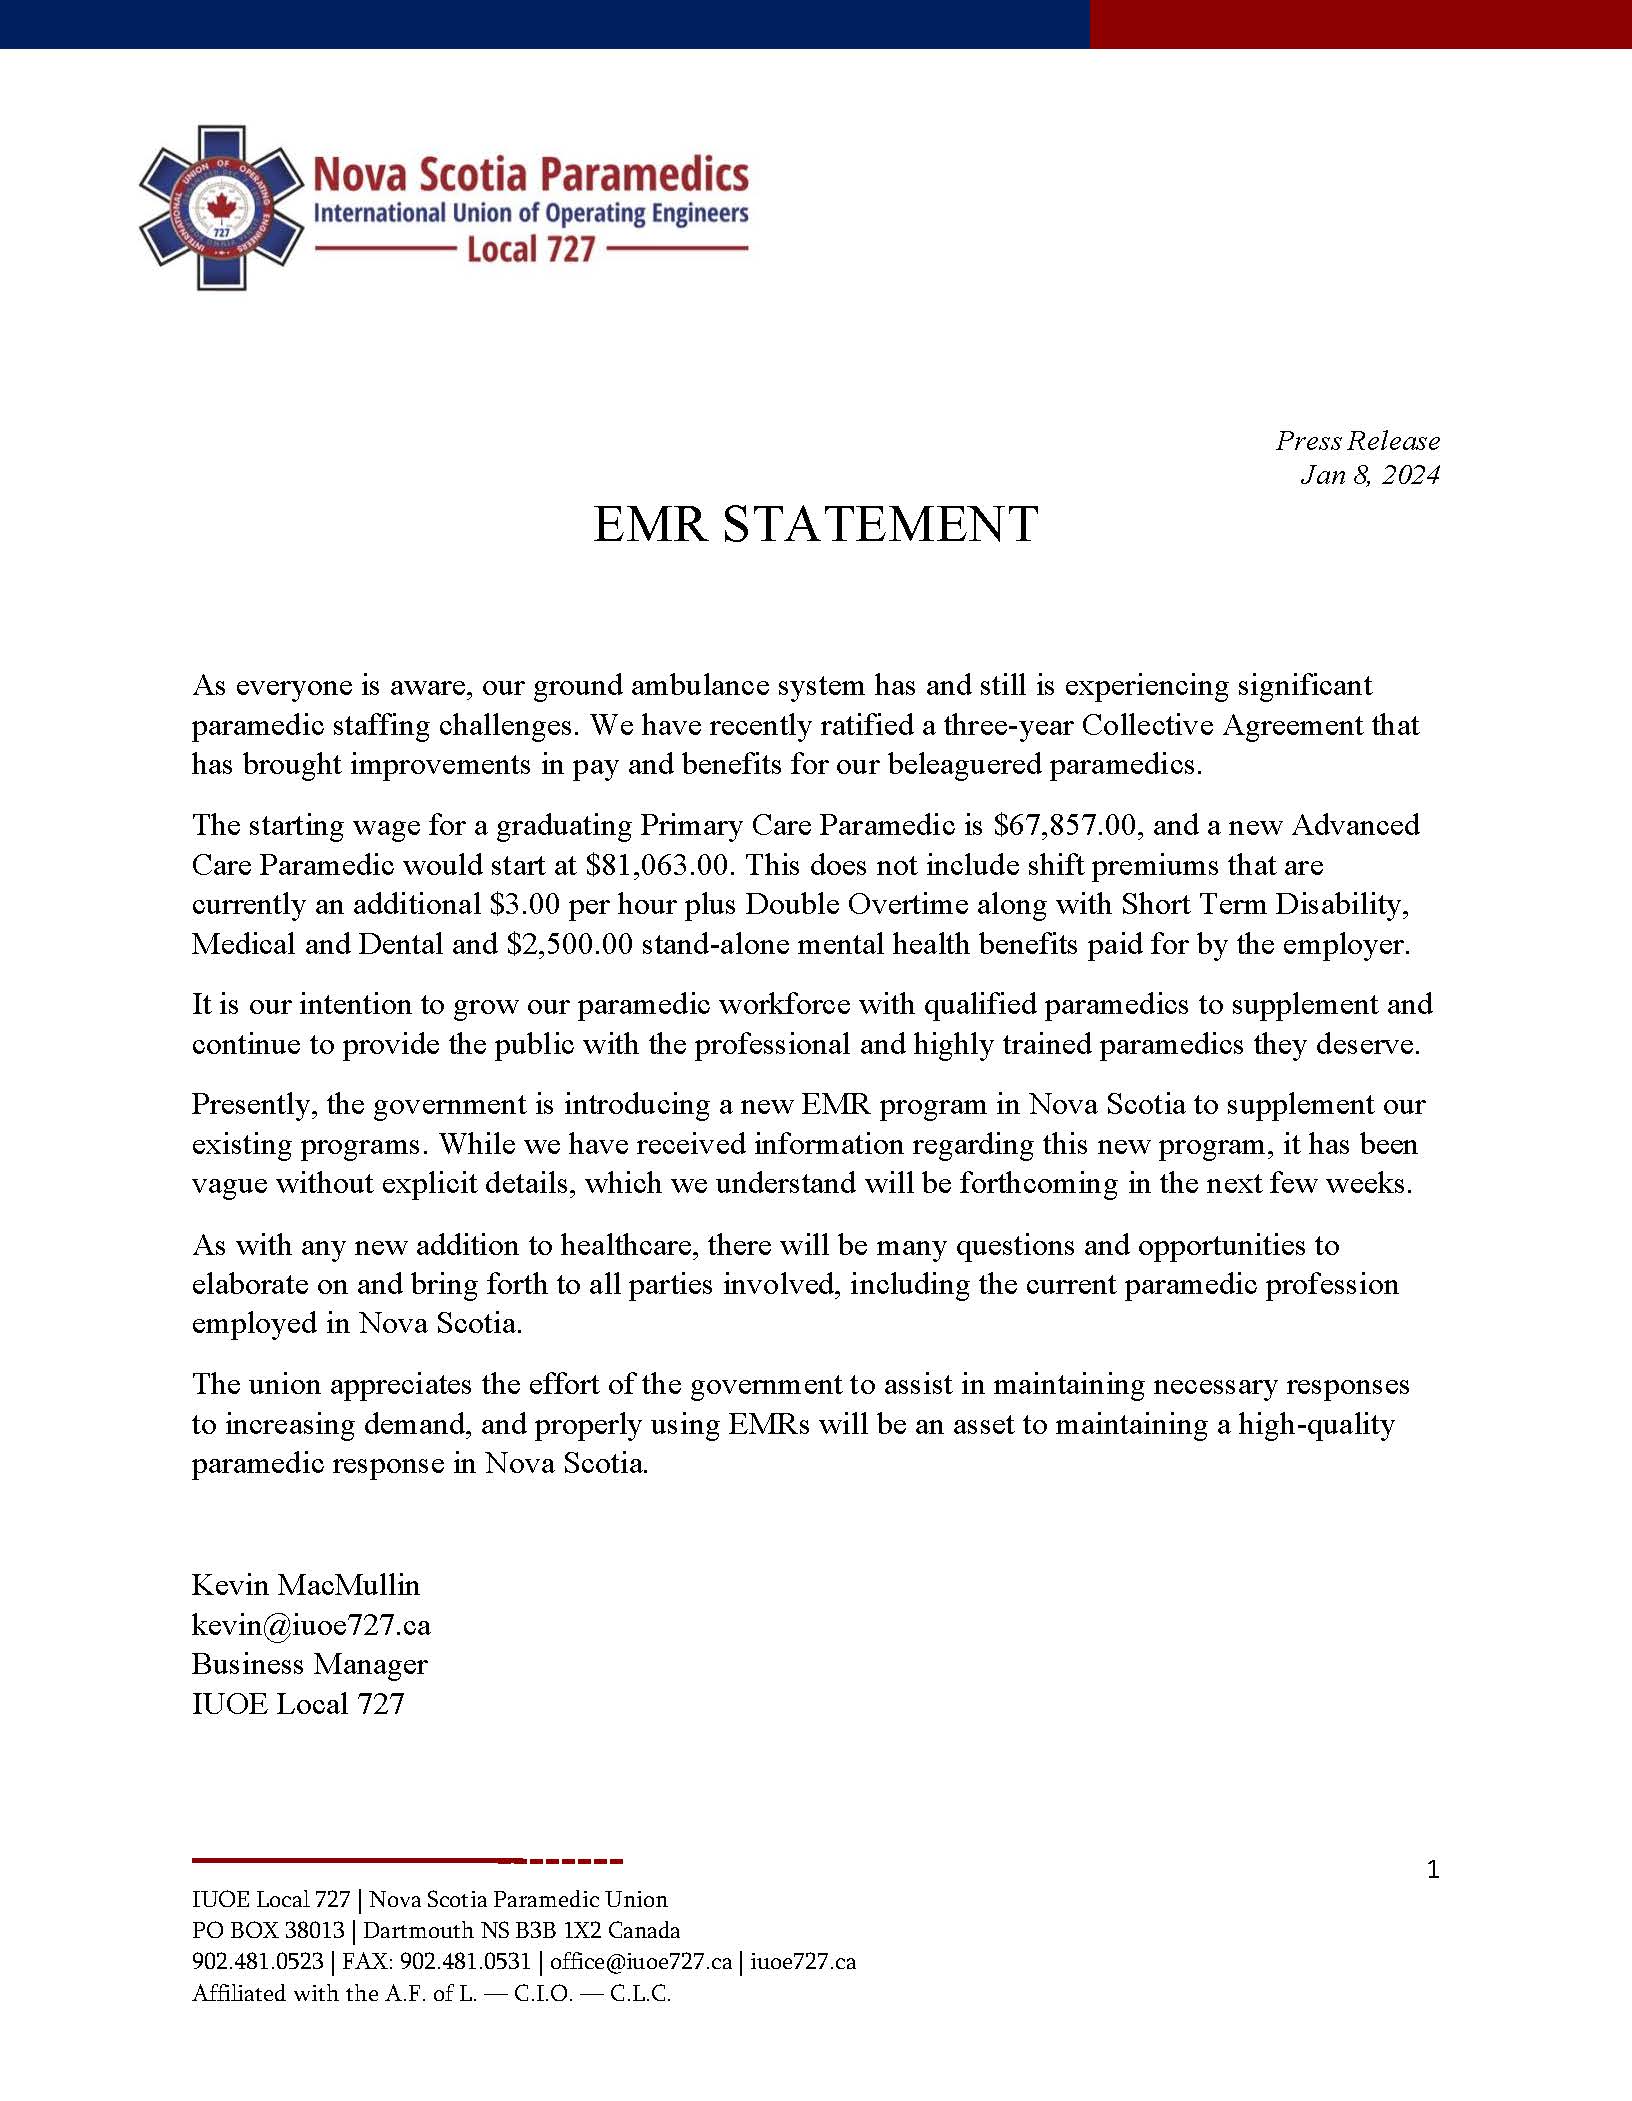 EMR Statement